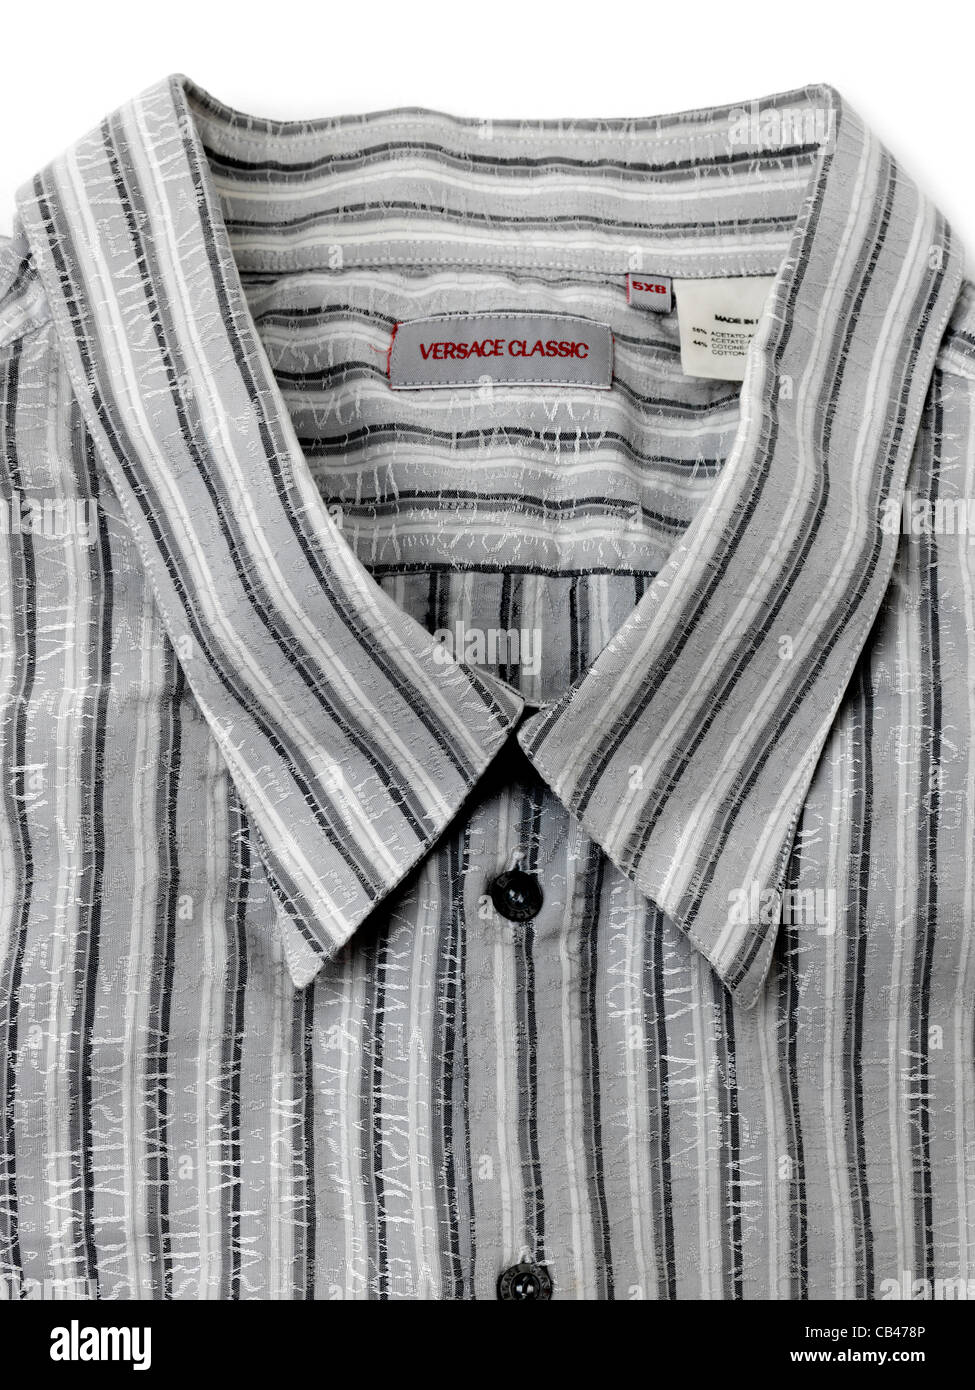 versace striped shirt